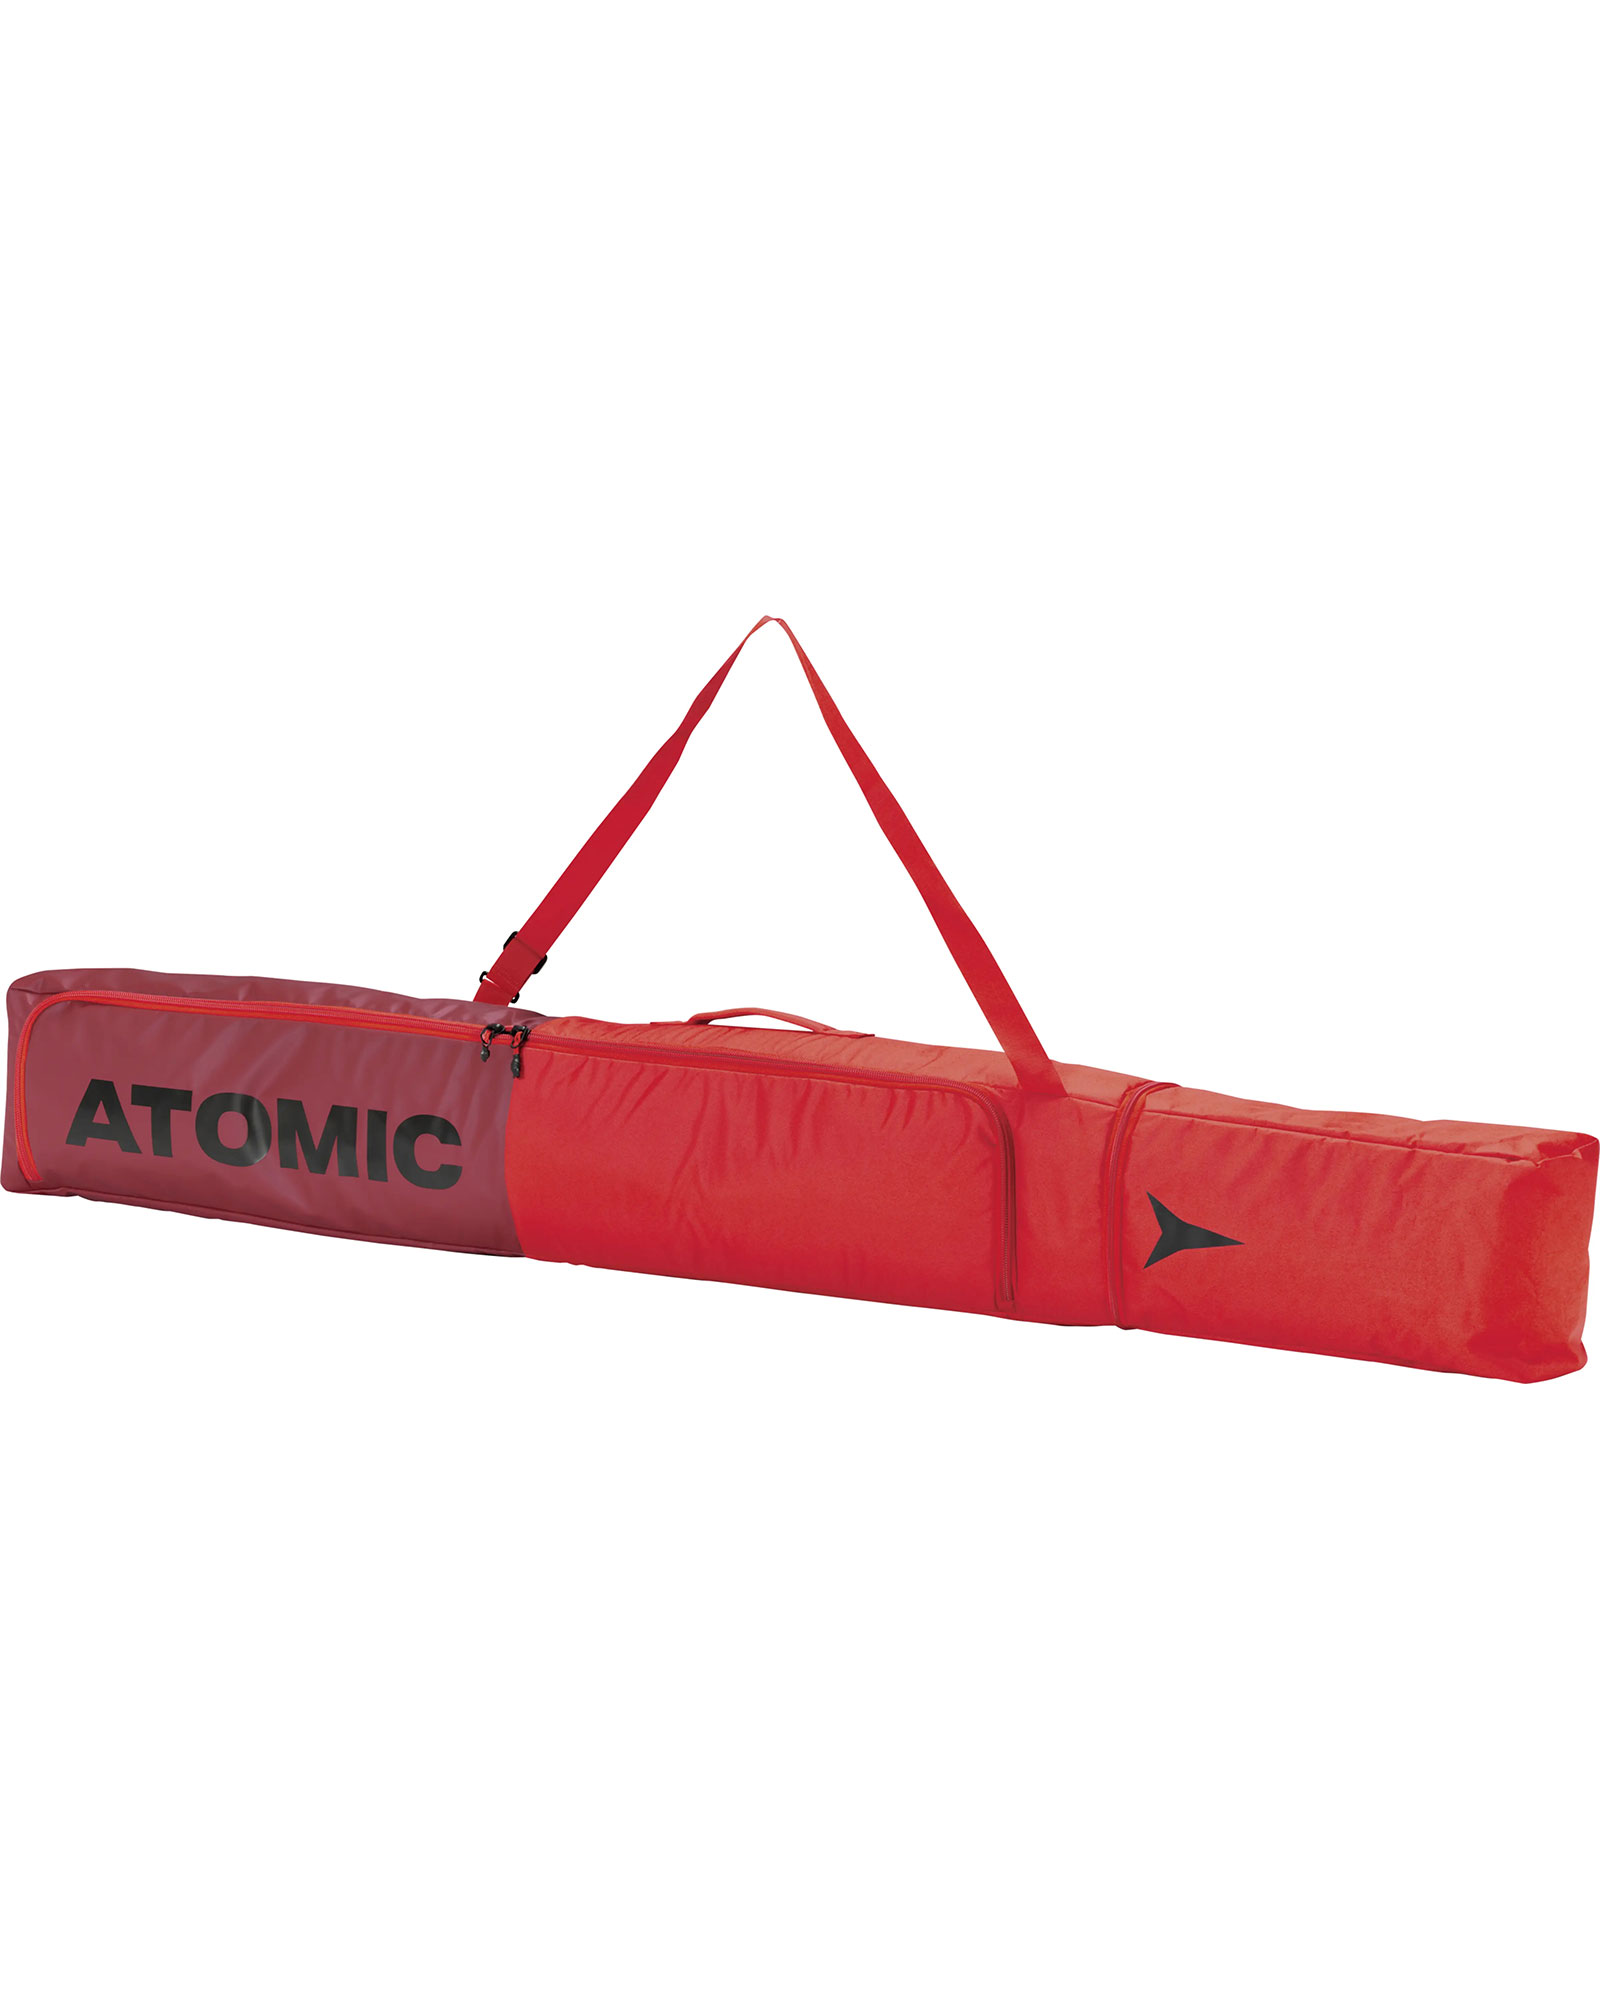 Atomic Single Ski Bag - Rio Red 205cm